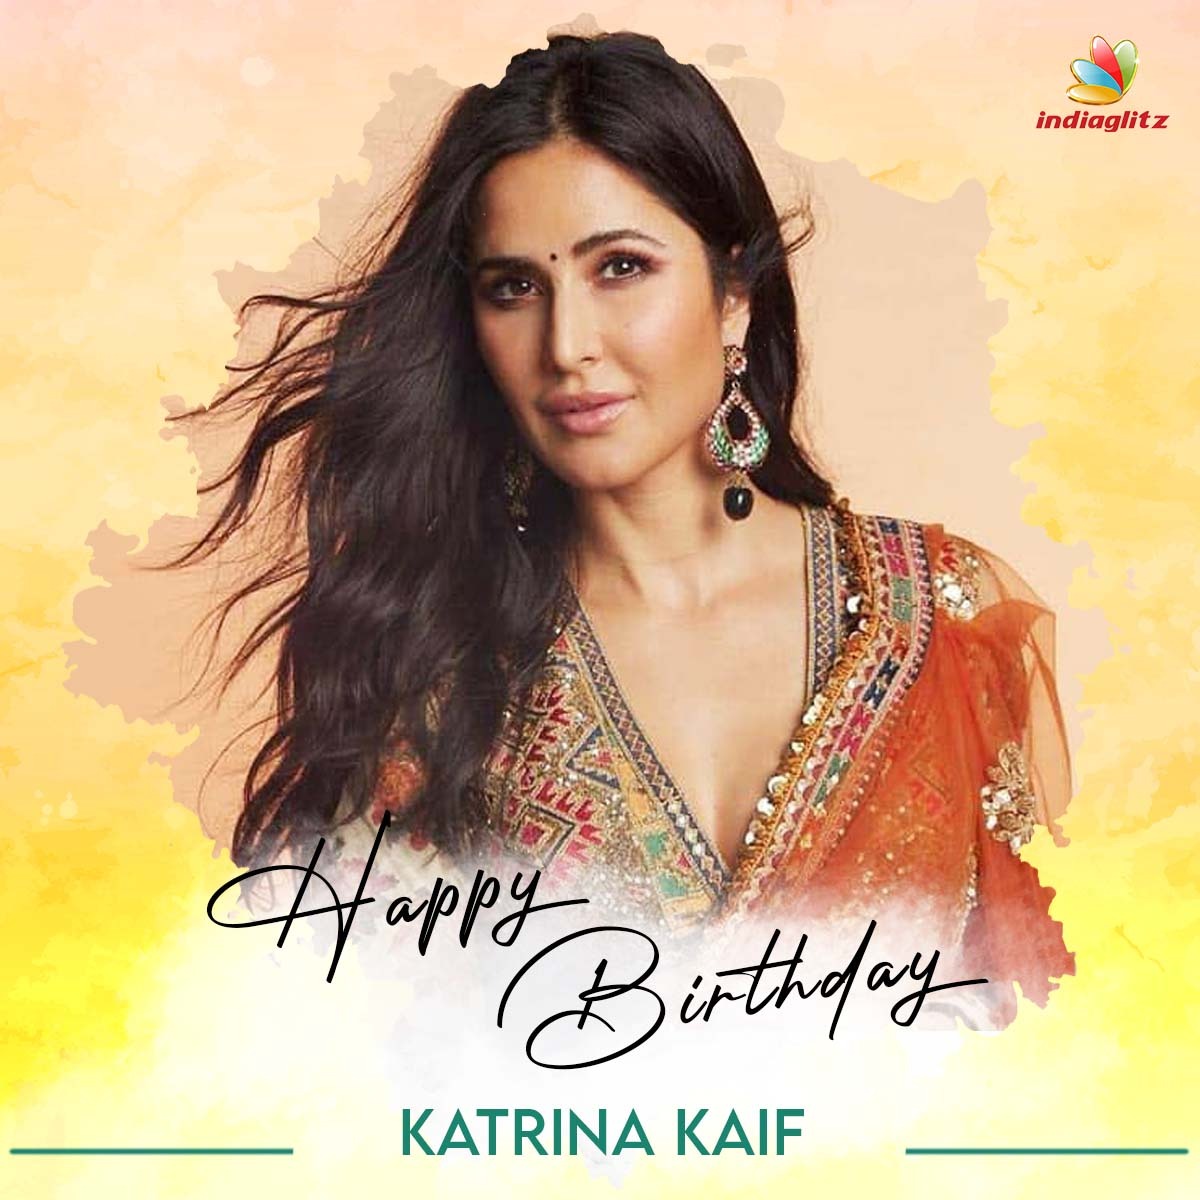 Wishing Actress Katrina Kaif a Very Happy Birthday   